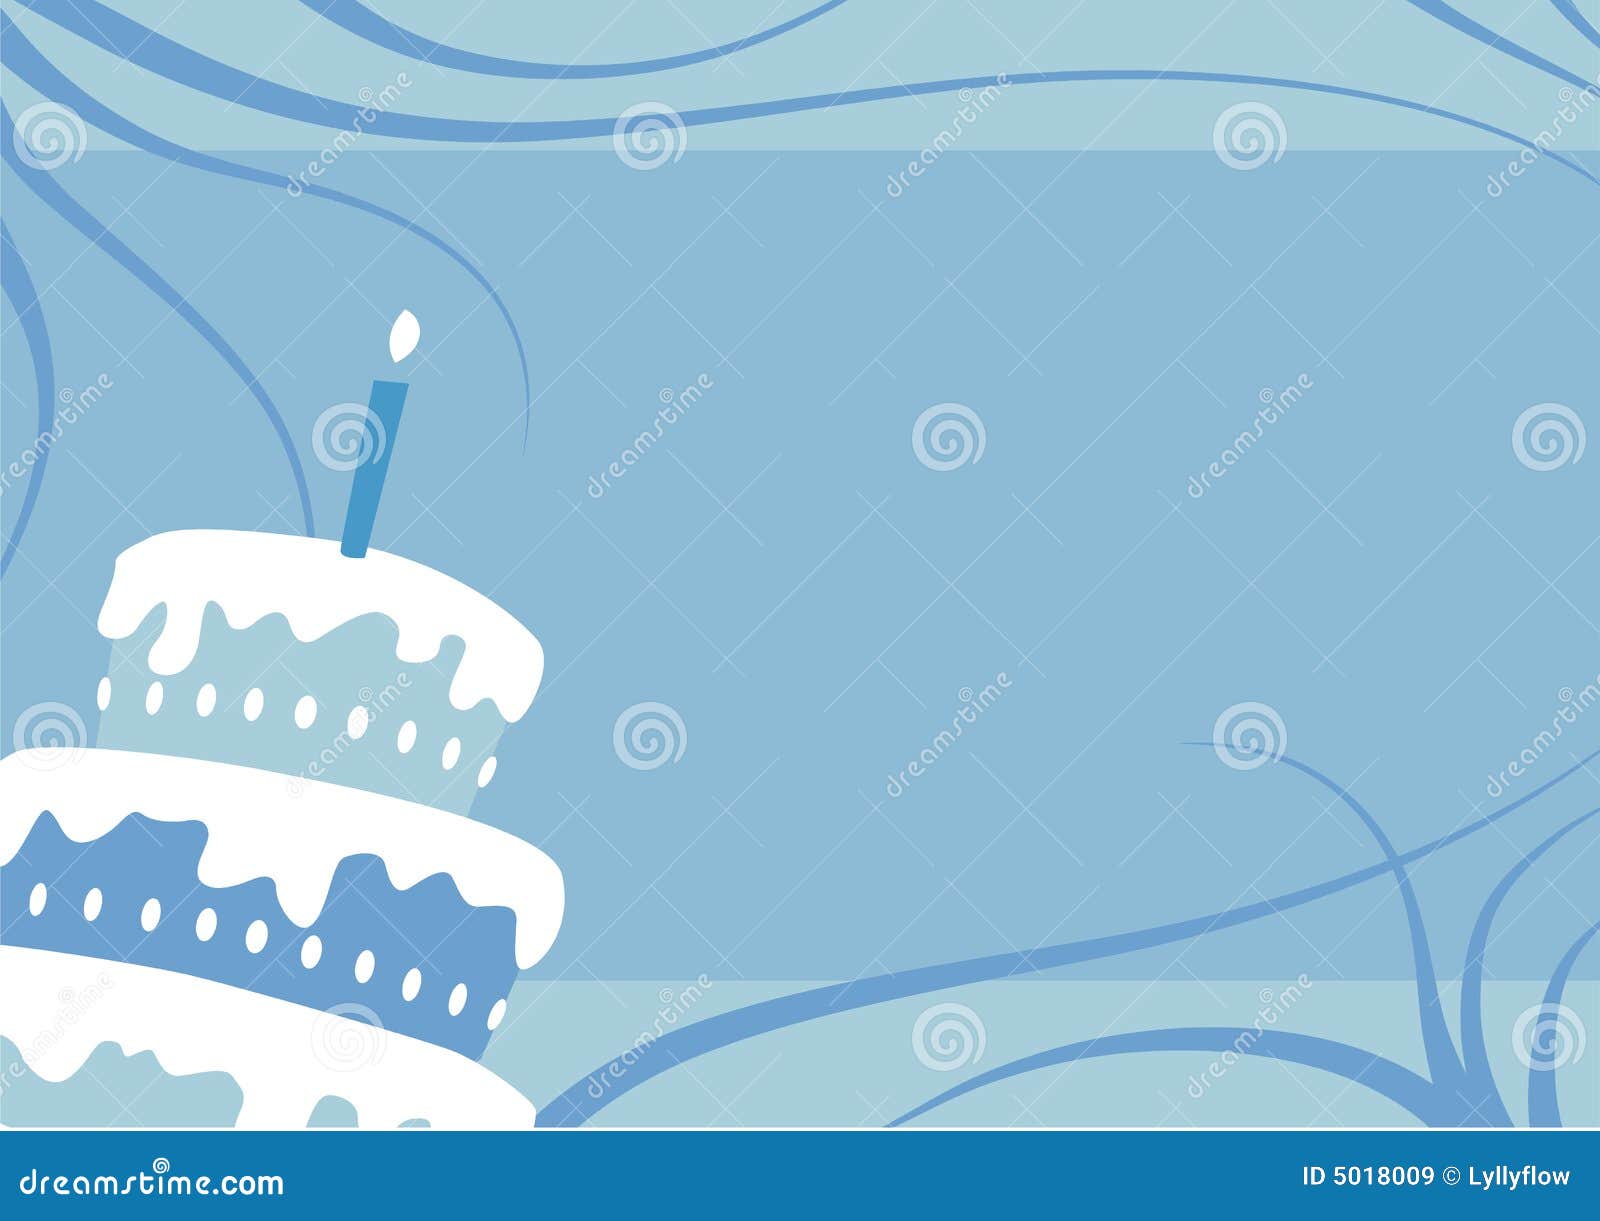 Birthday Boy Cake Illustration 5018009 - Megapixl